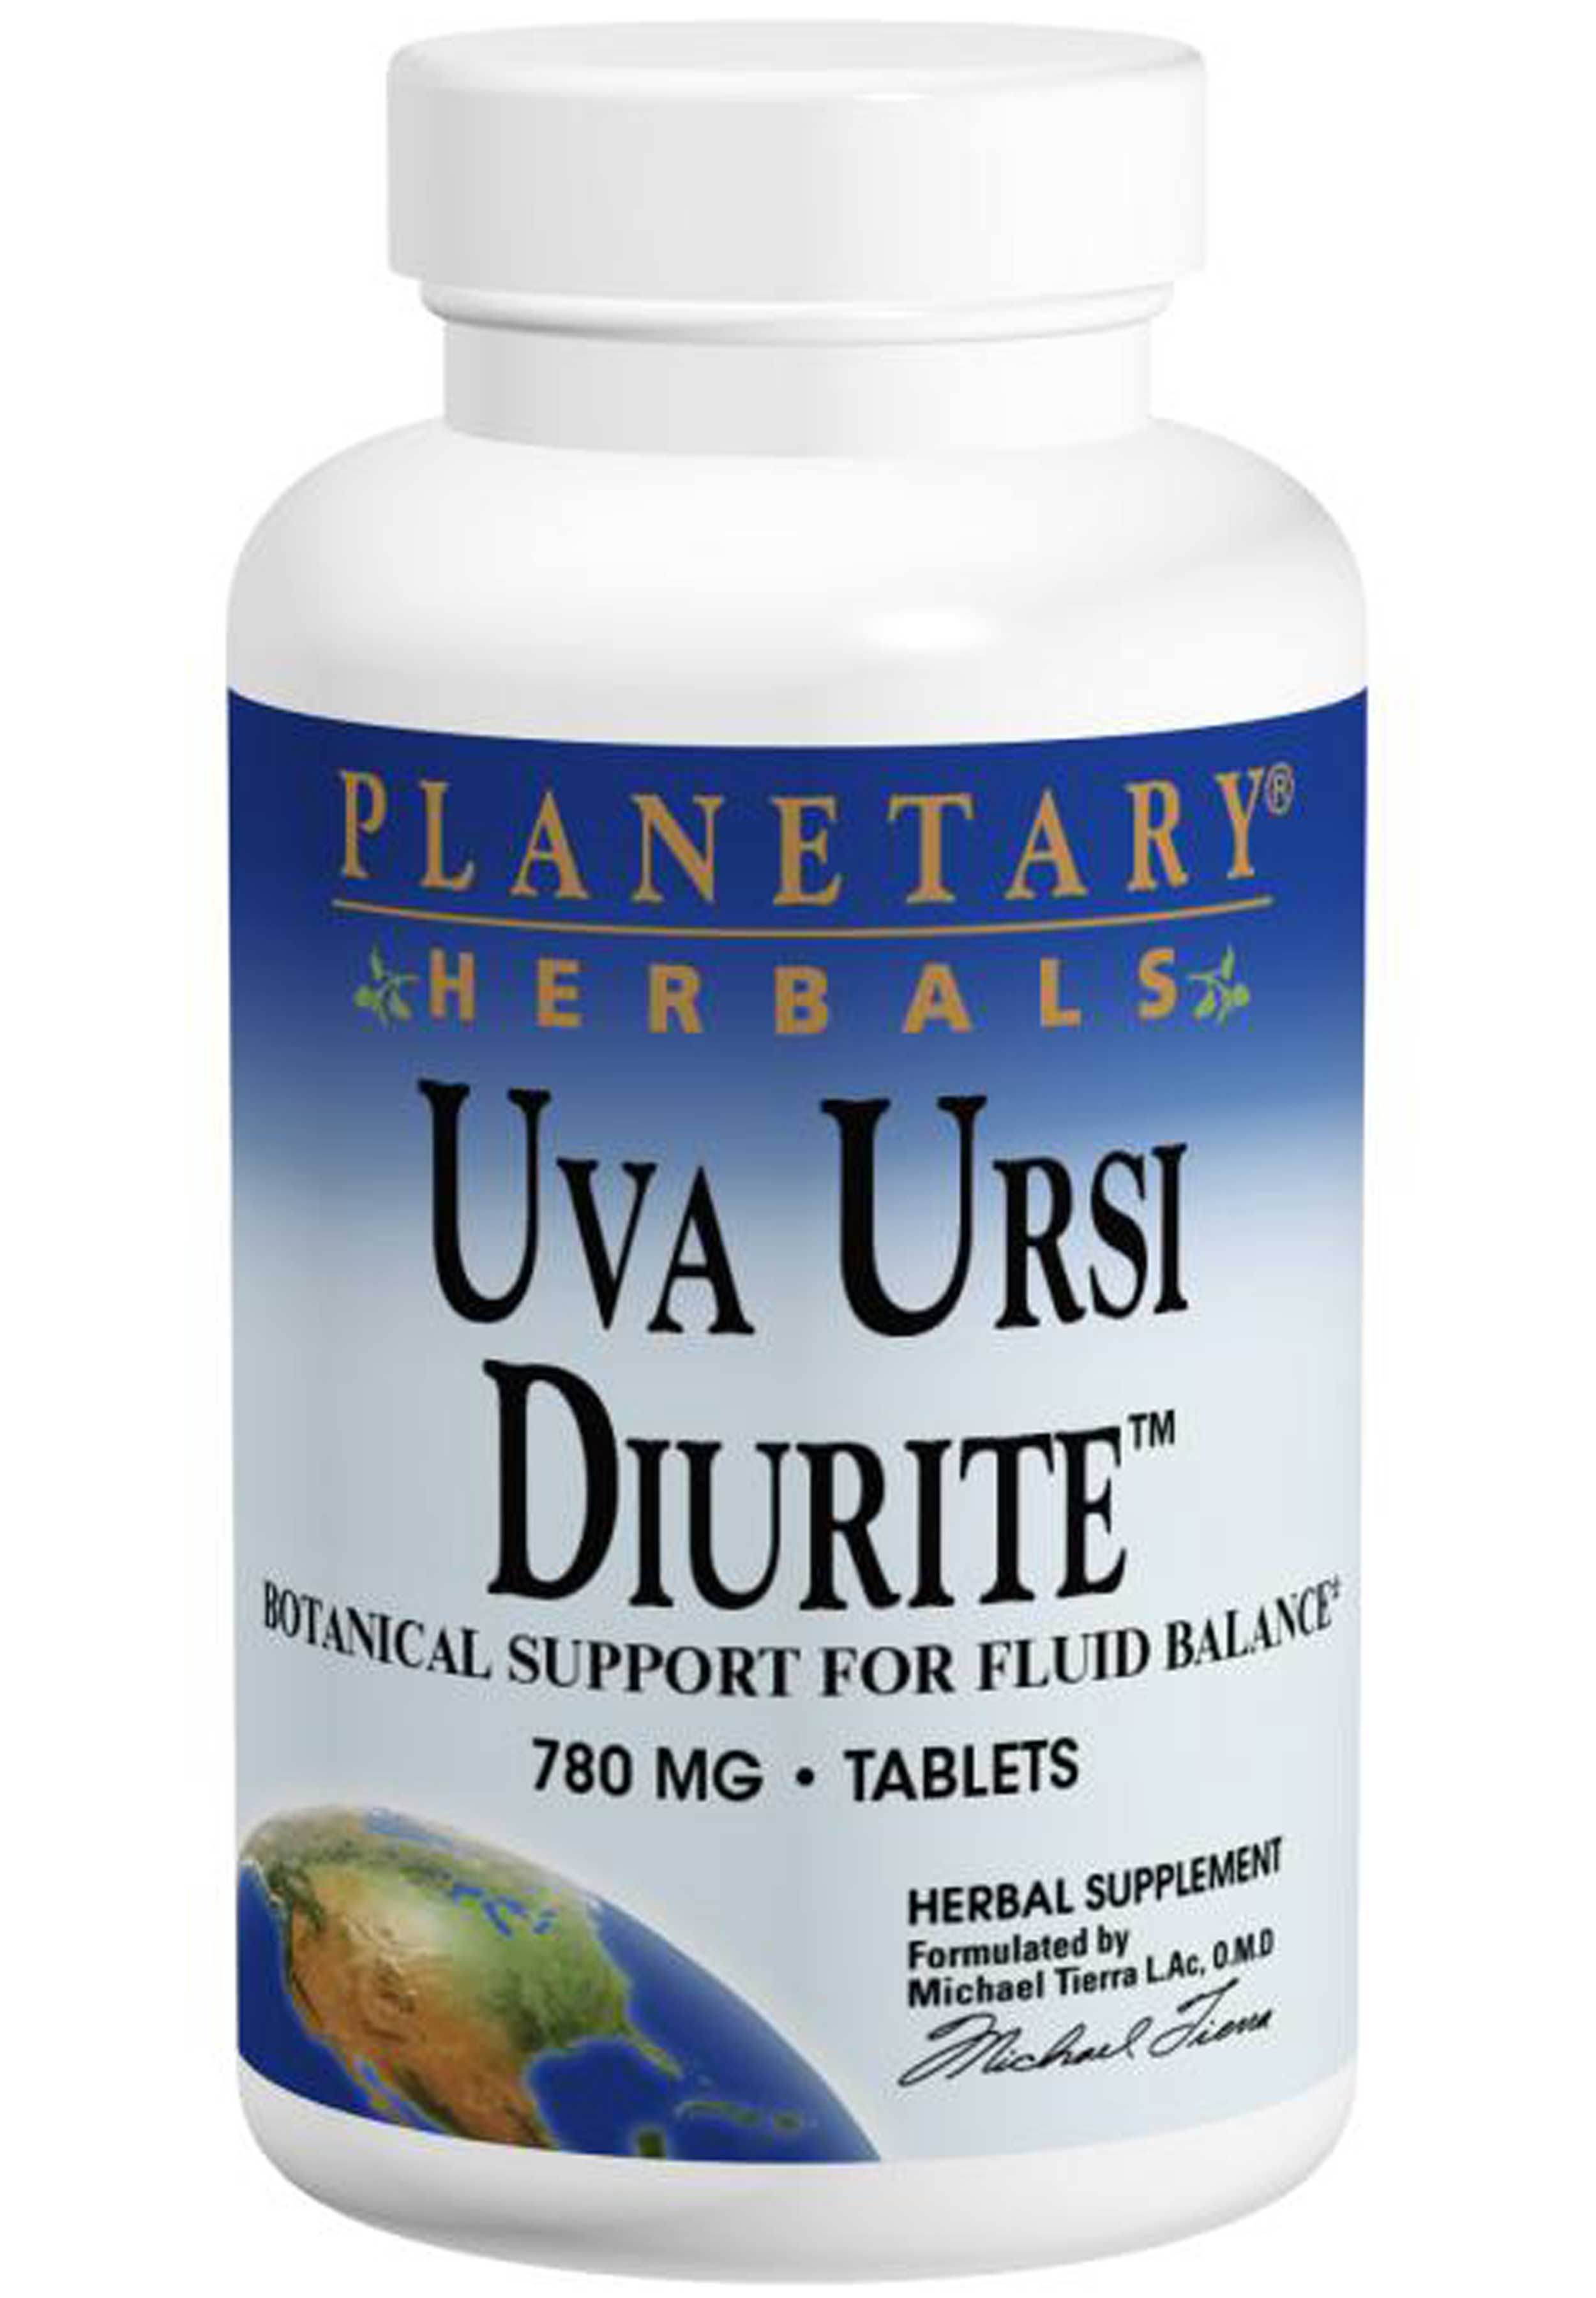 Planetary Herbals Uva Ursi Diurite 780 mg